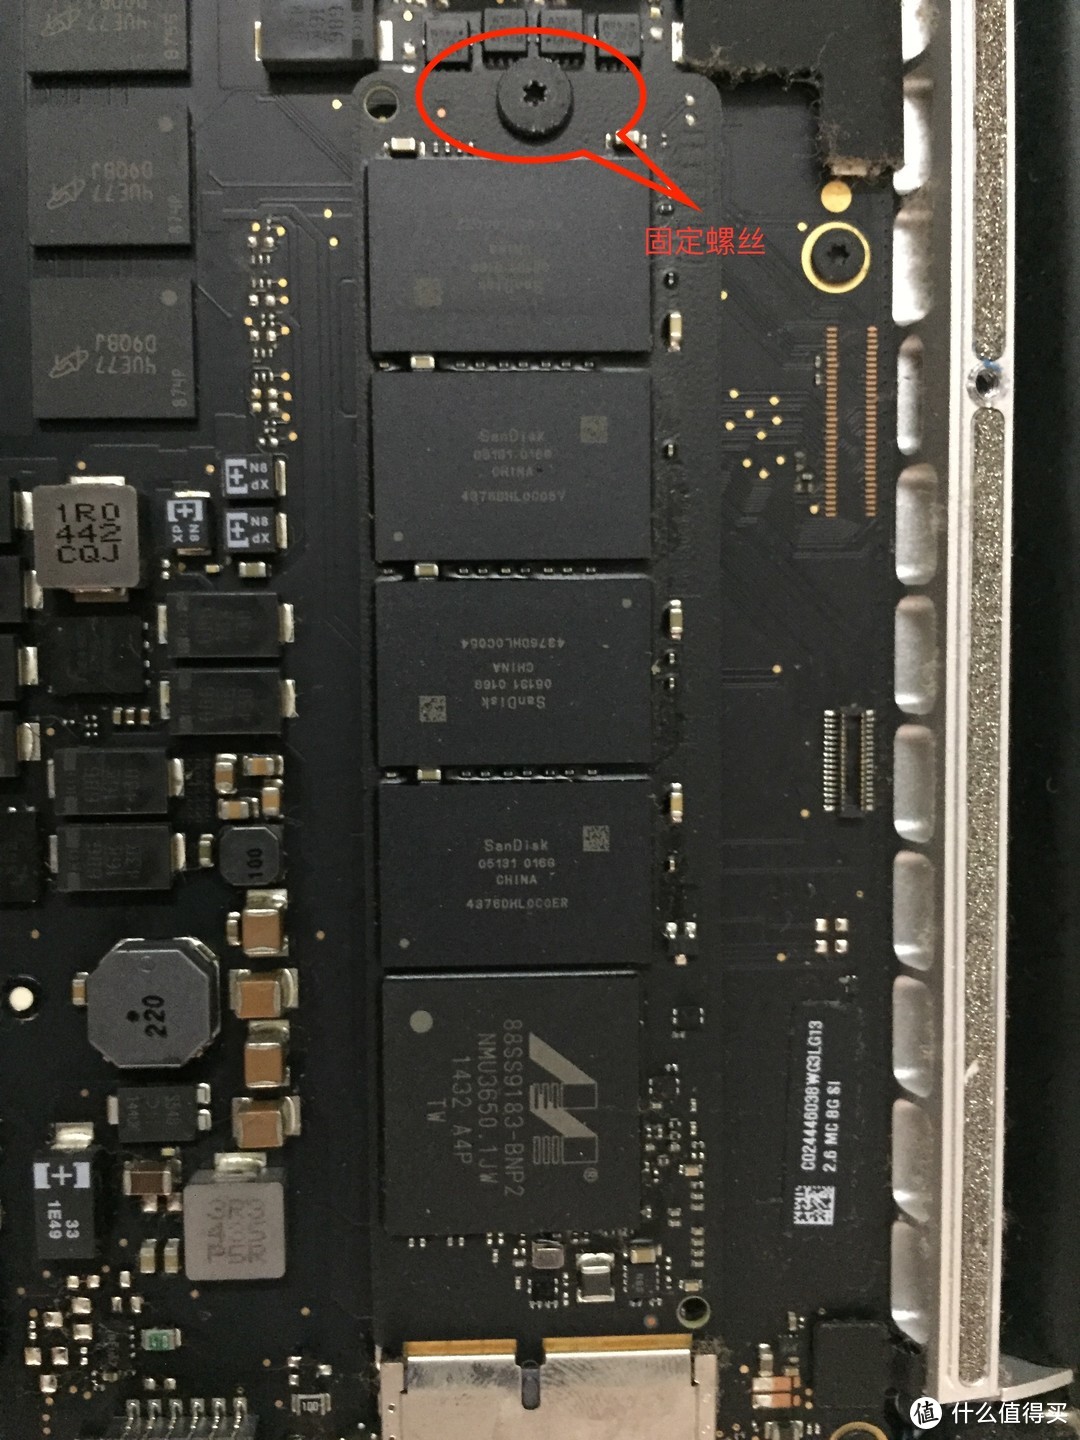 2014款MacBook Pro更换西数SN550 1TB硬盘纪录